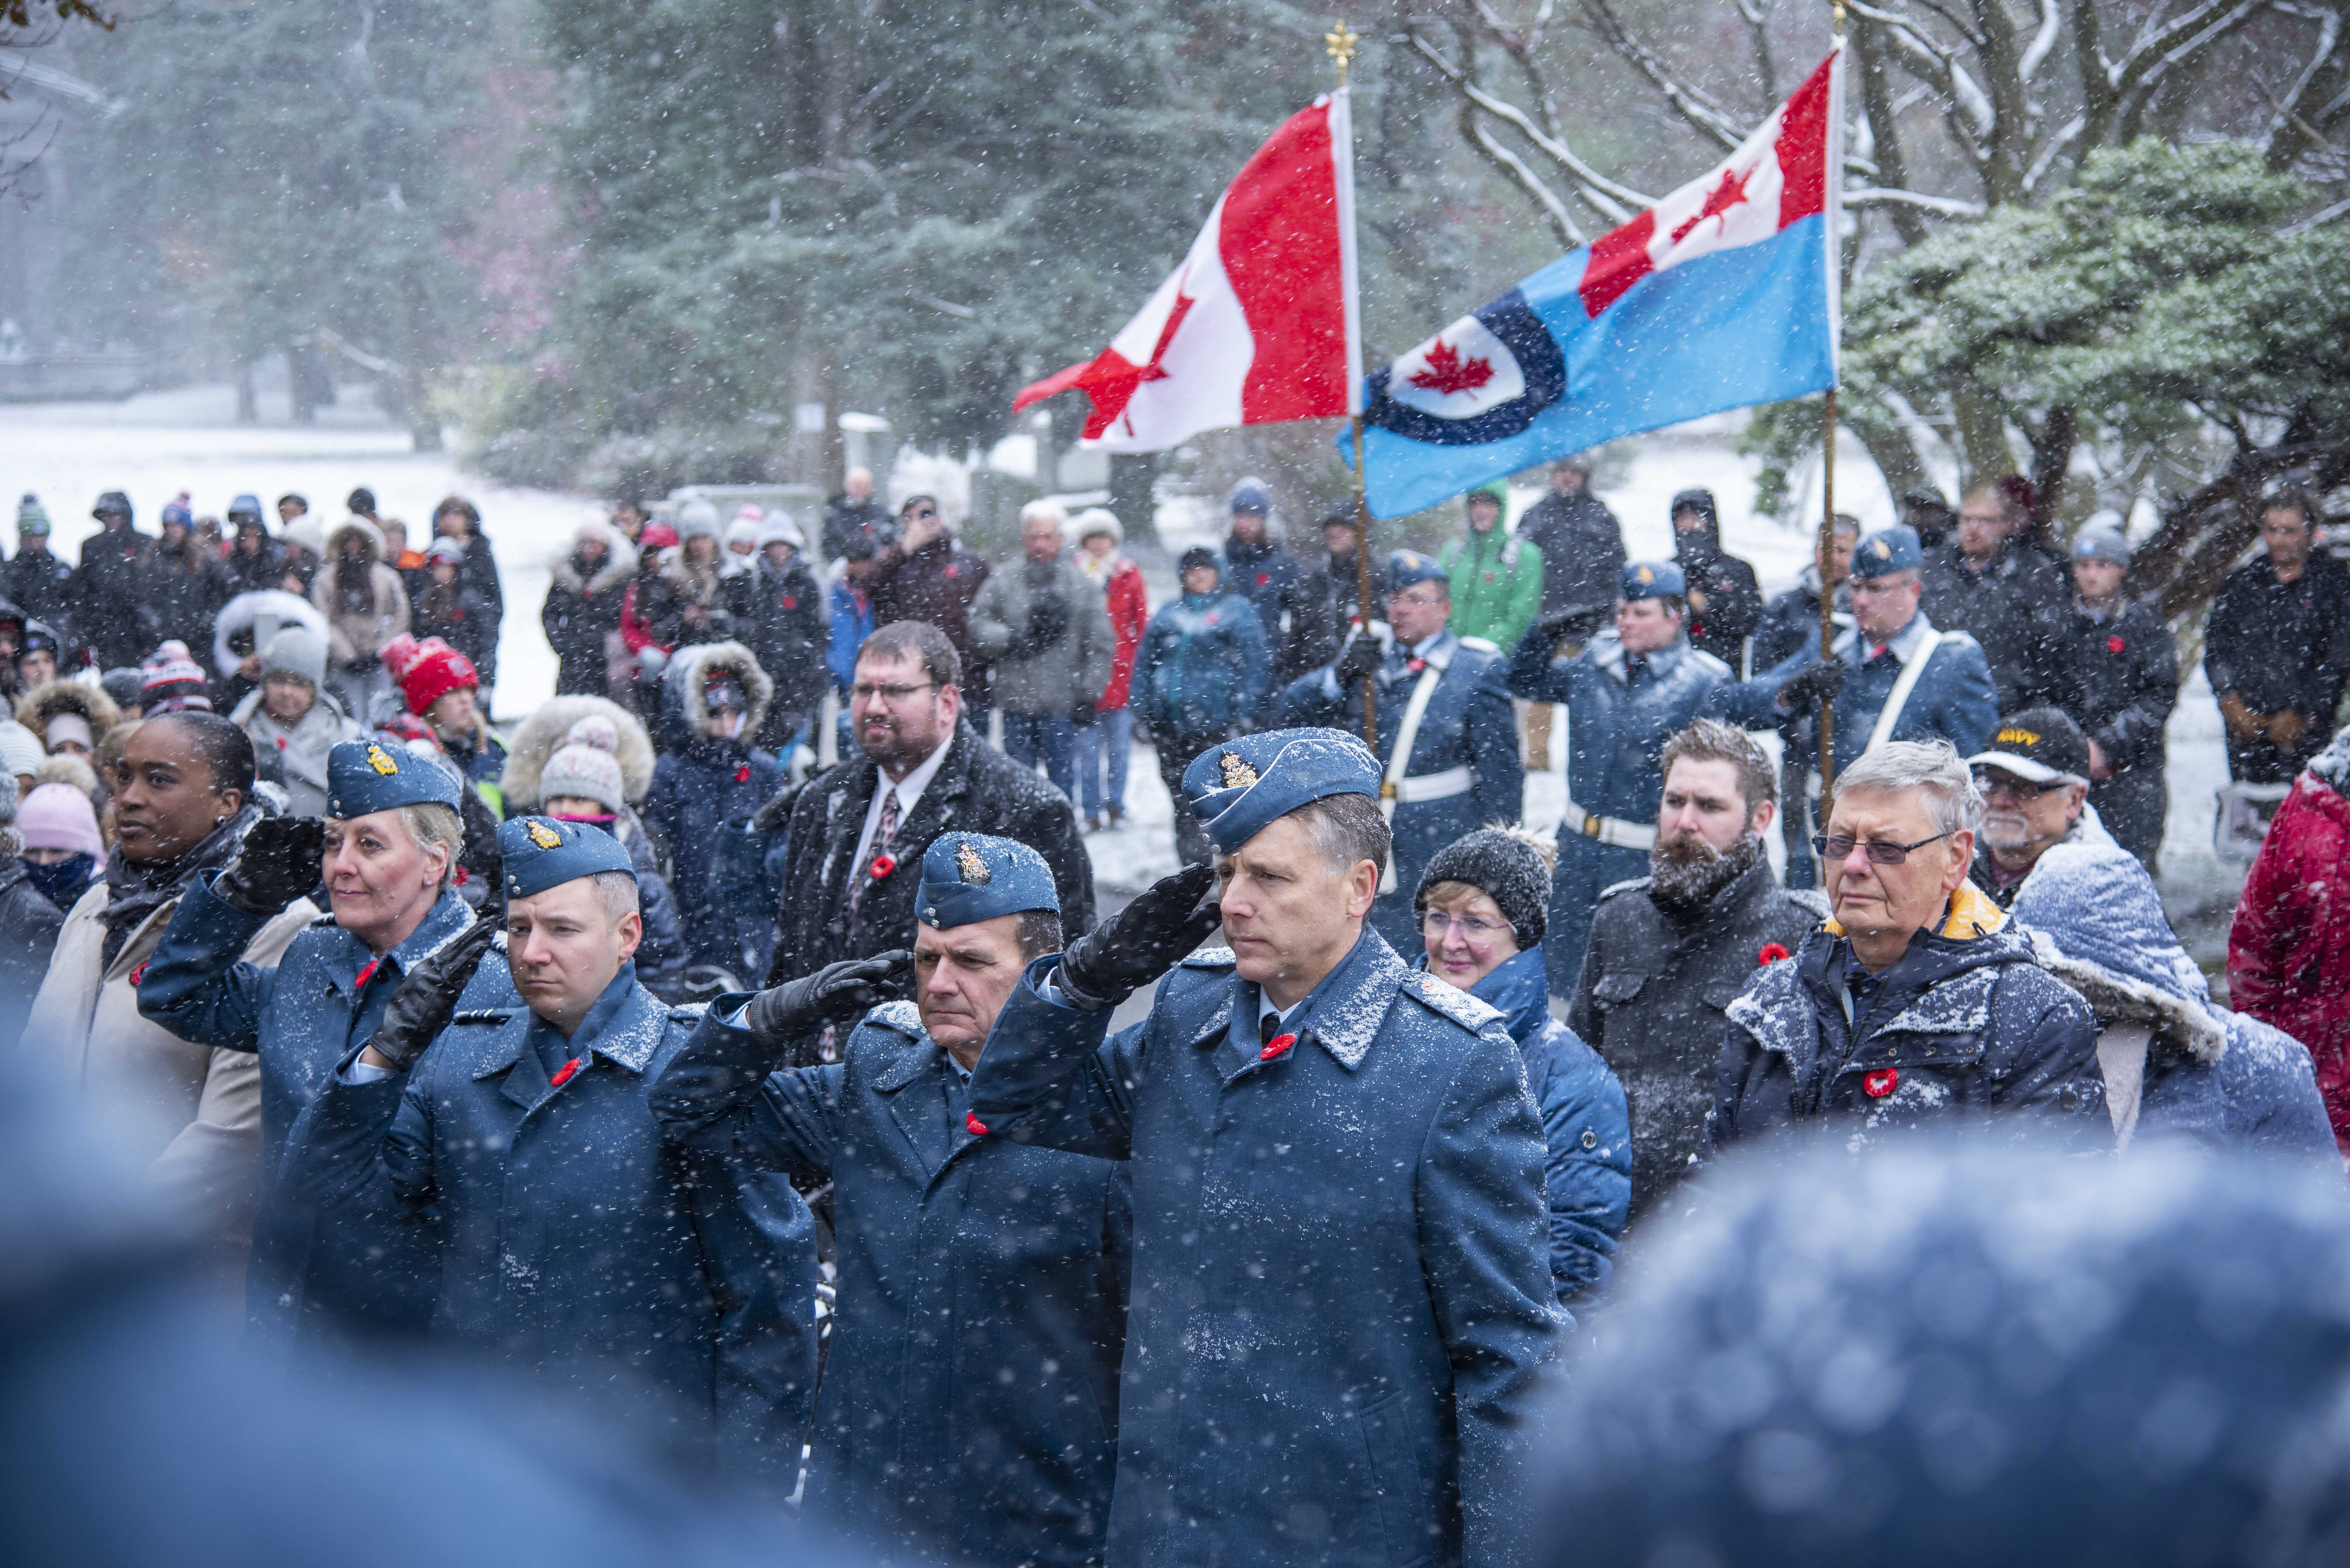 Au milieu d’une foule, quatre personnes vêtues d’uniformes de la Force aérienne saluent, sous la neige qui tombe. 